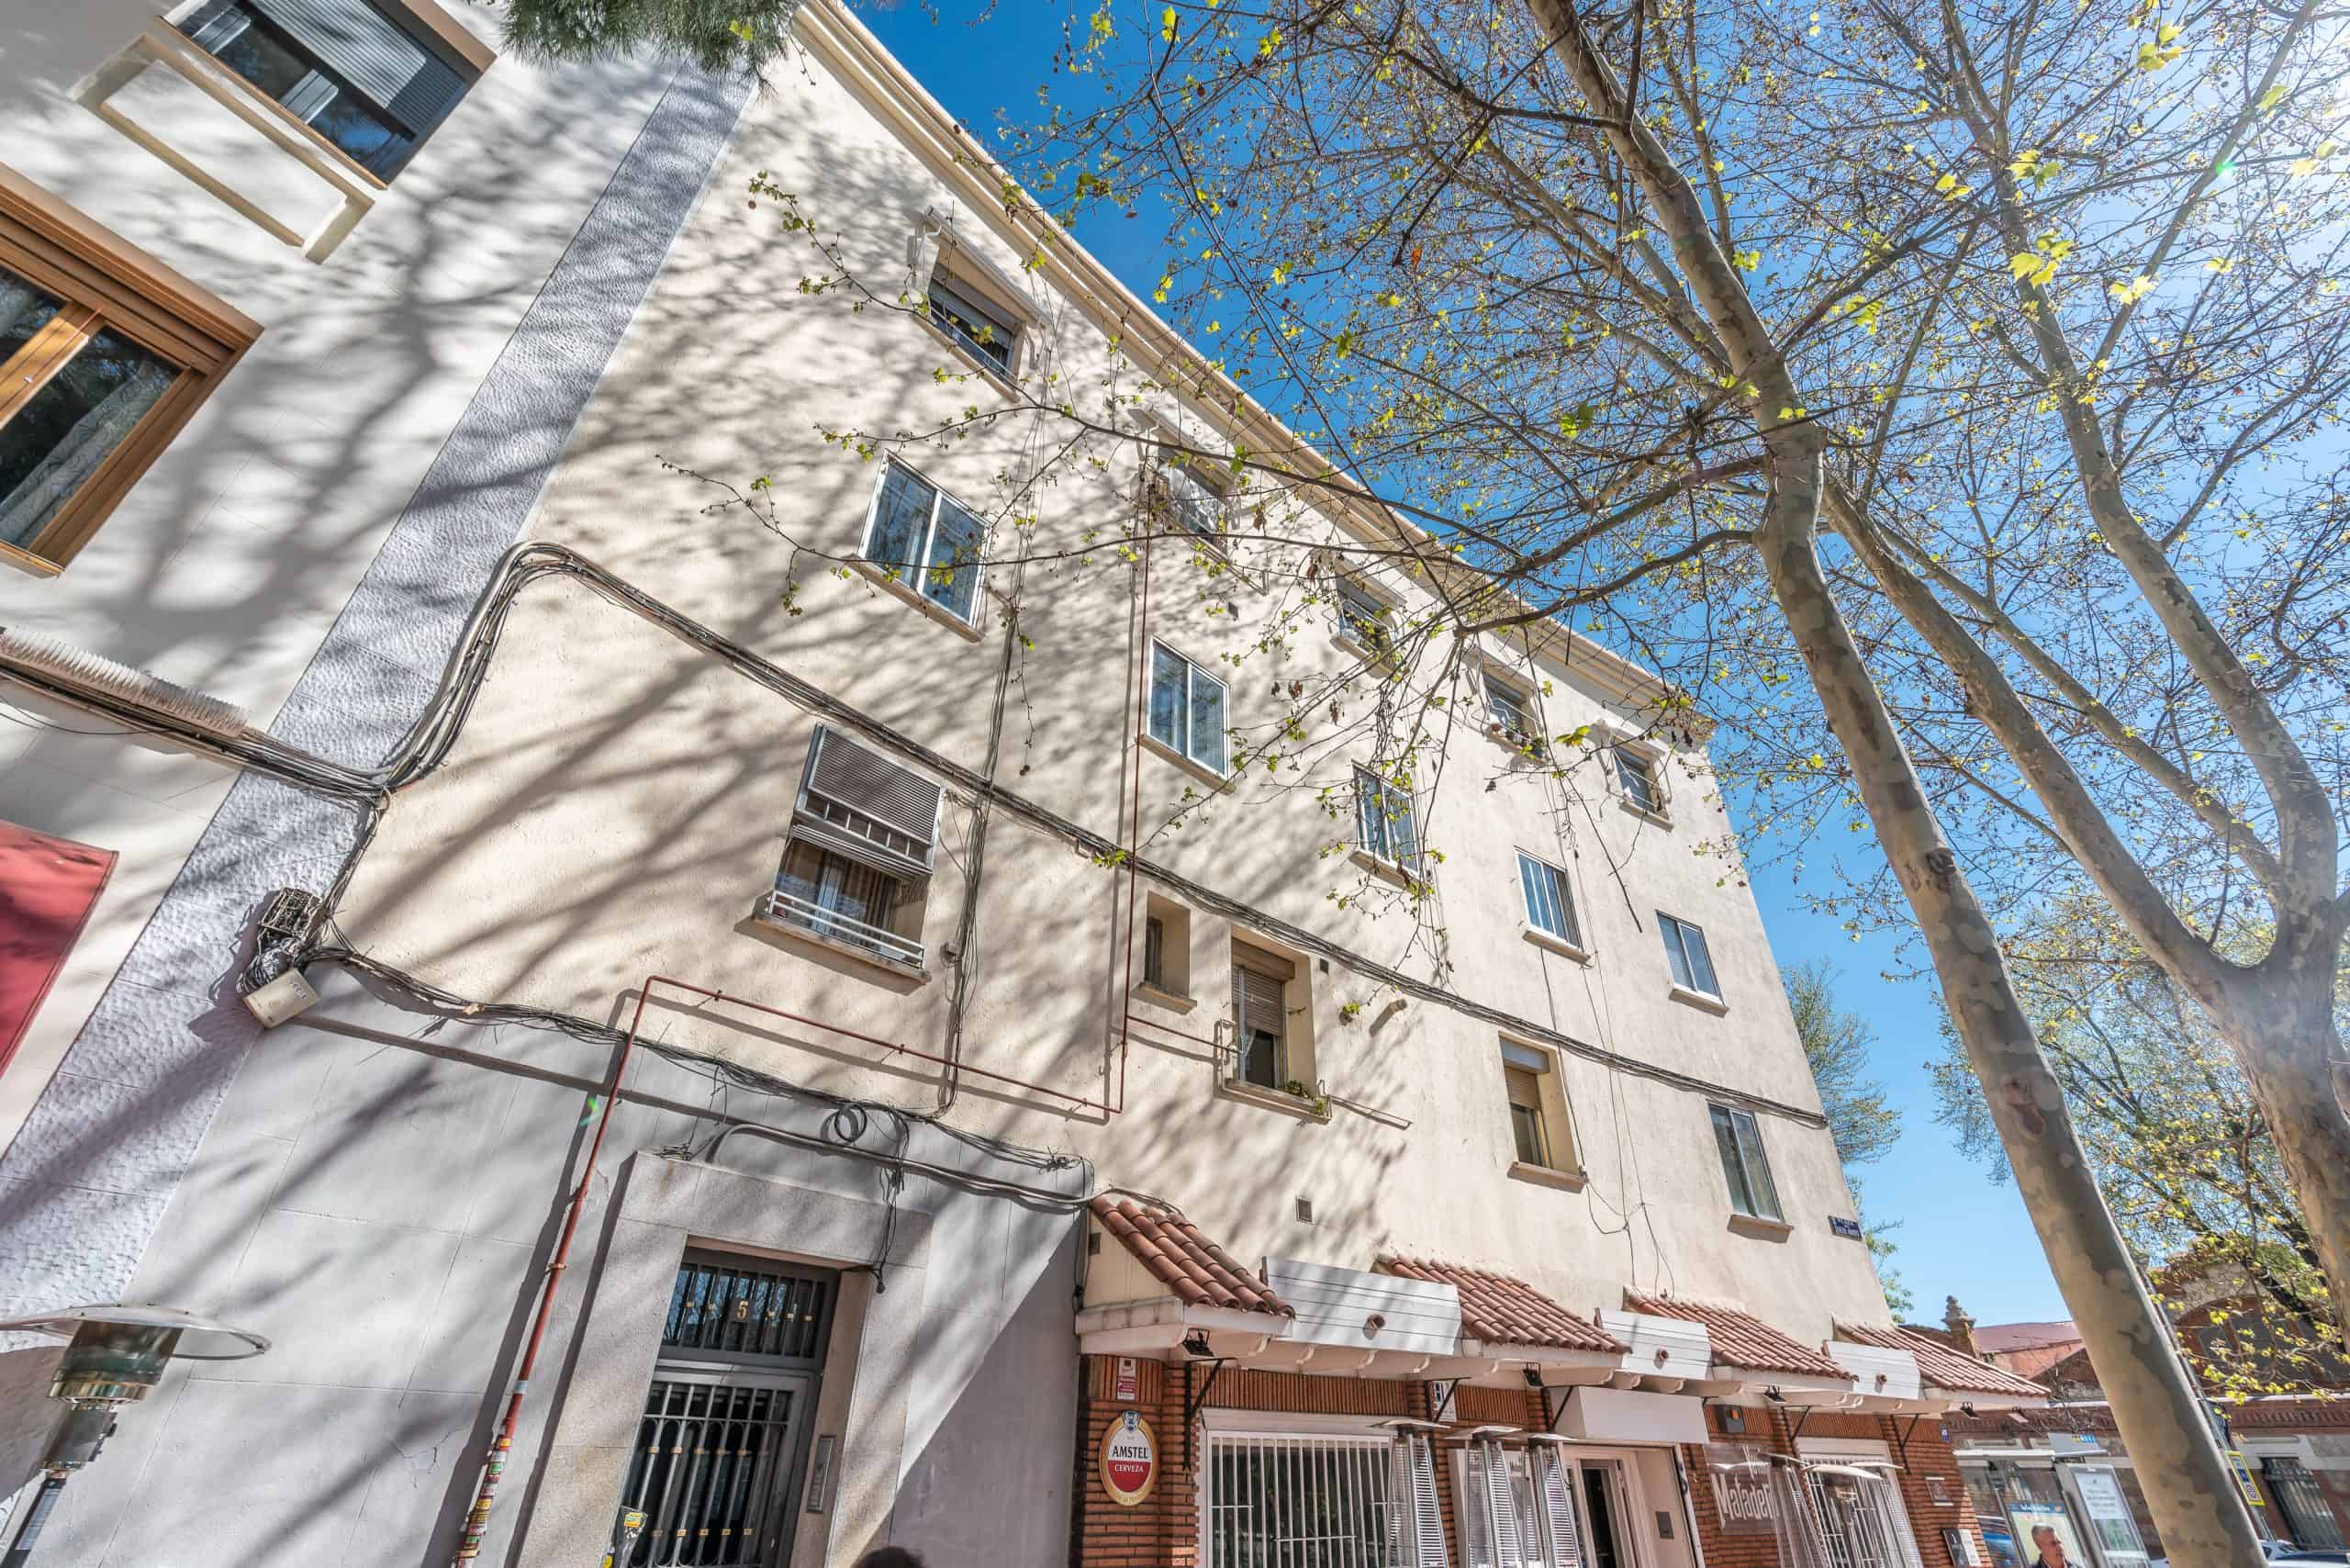 1 SALON (2) (Copy) Agencia Inmobiliaria de Madrid-FUTUROCASA-Zona ARGANZUELA- General Maroto, FACHADA